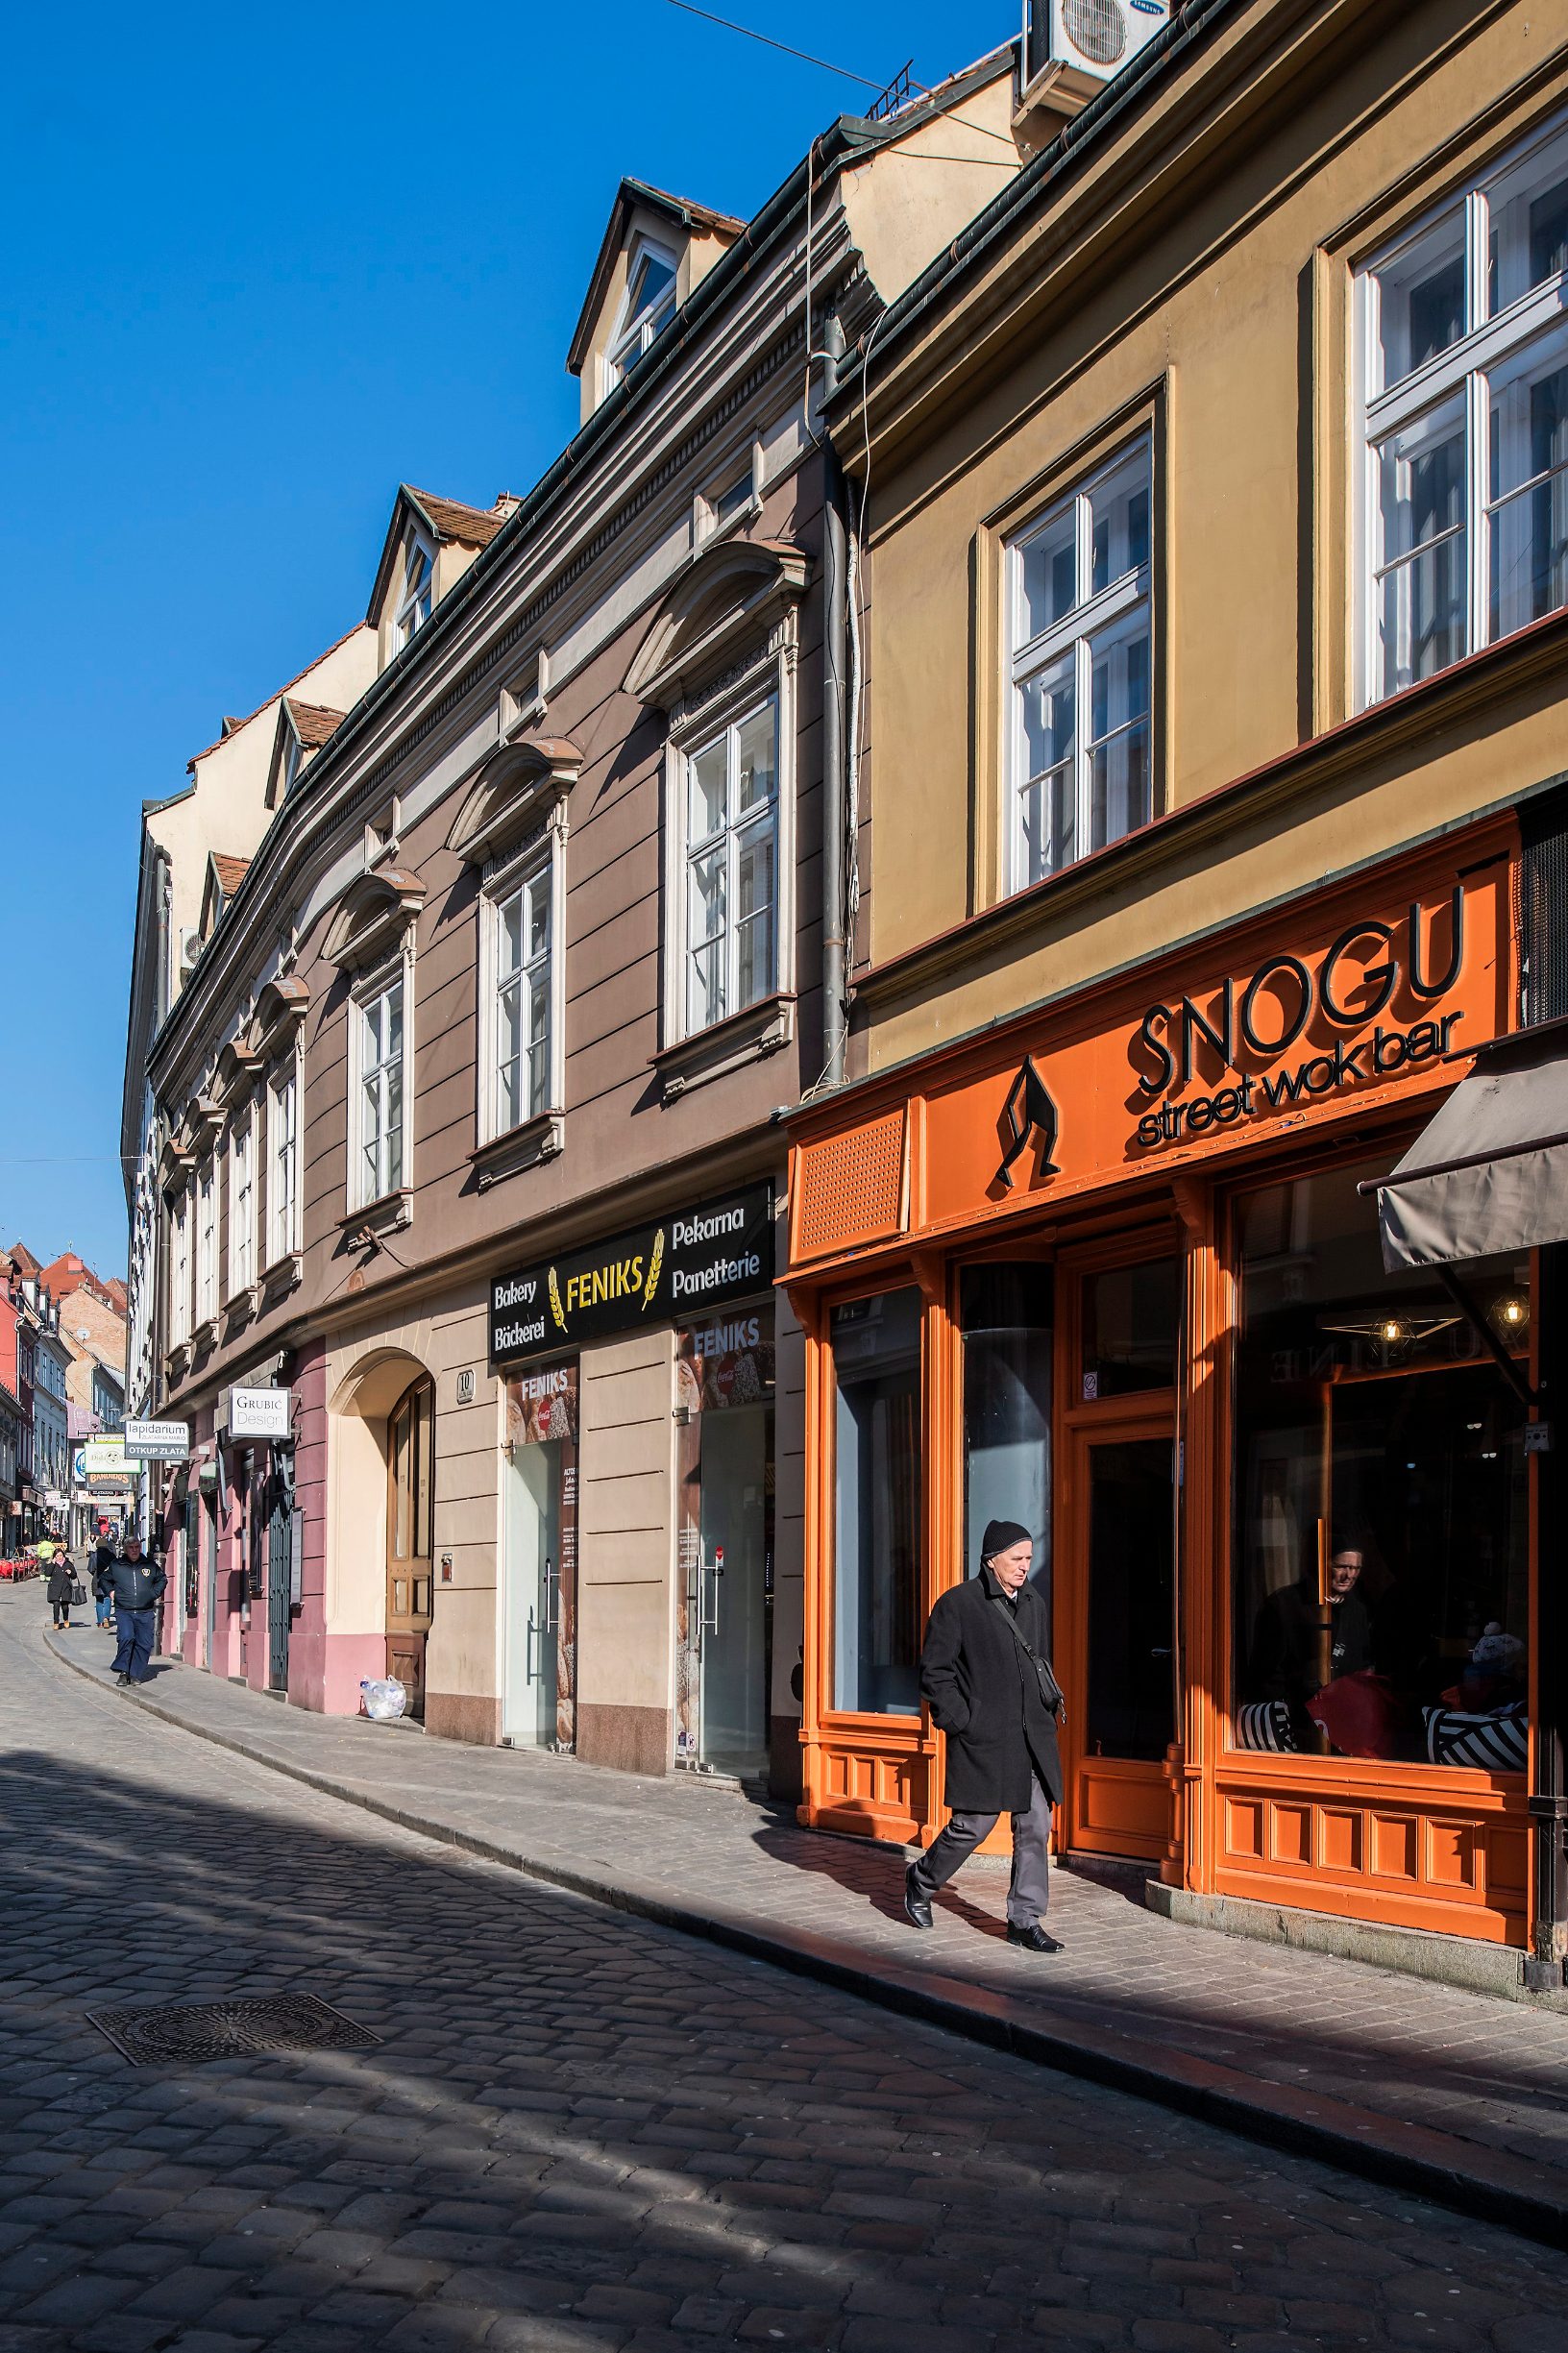 Zagreb, 220120.
Snogu street wok bar u Radicevoj ulici.
Foto: Neja Markicevic / CROPIX